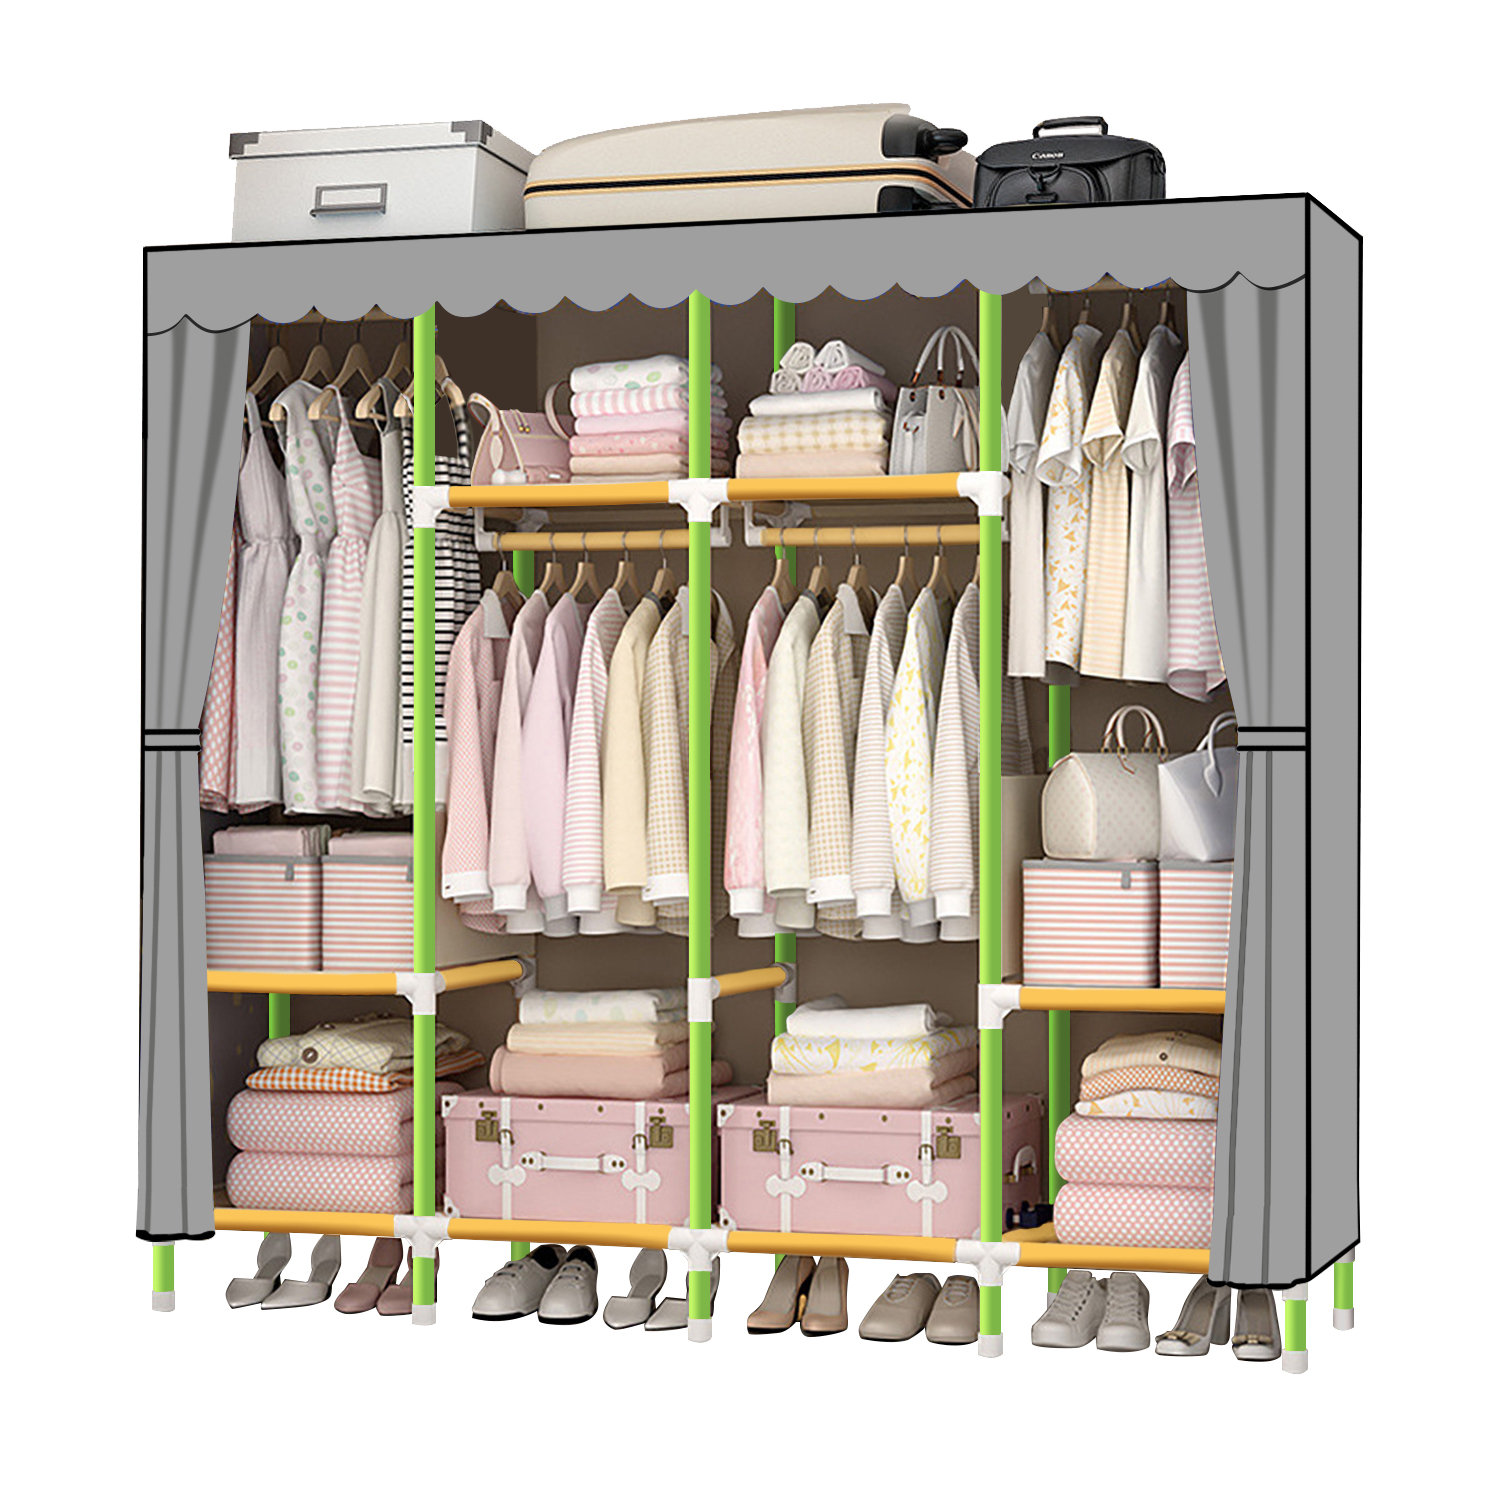 Basics Wardrobe Organizer Rack w/ Shelves Only $57.84